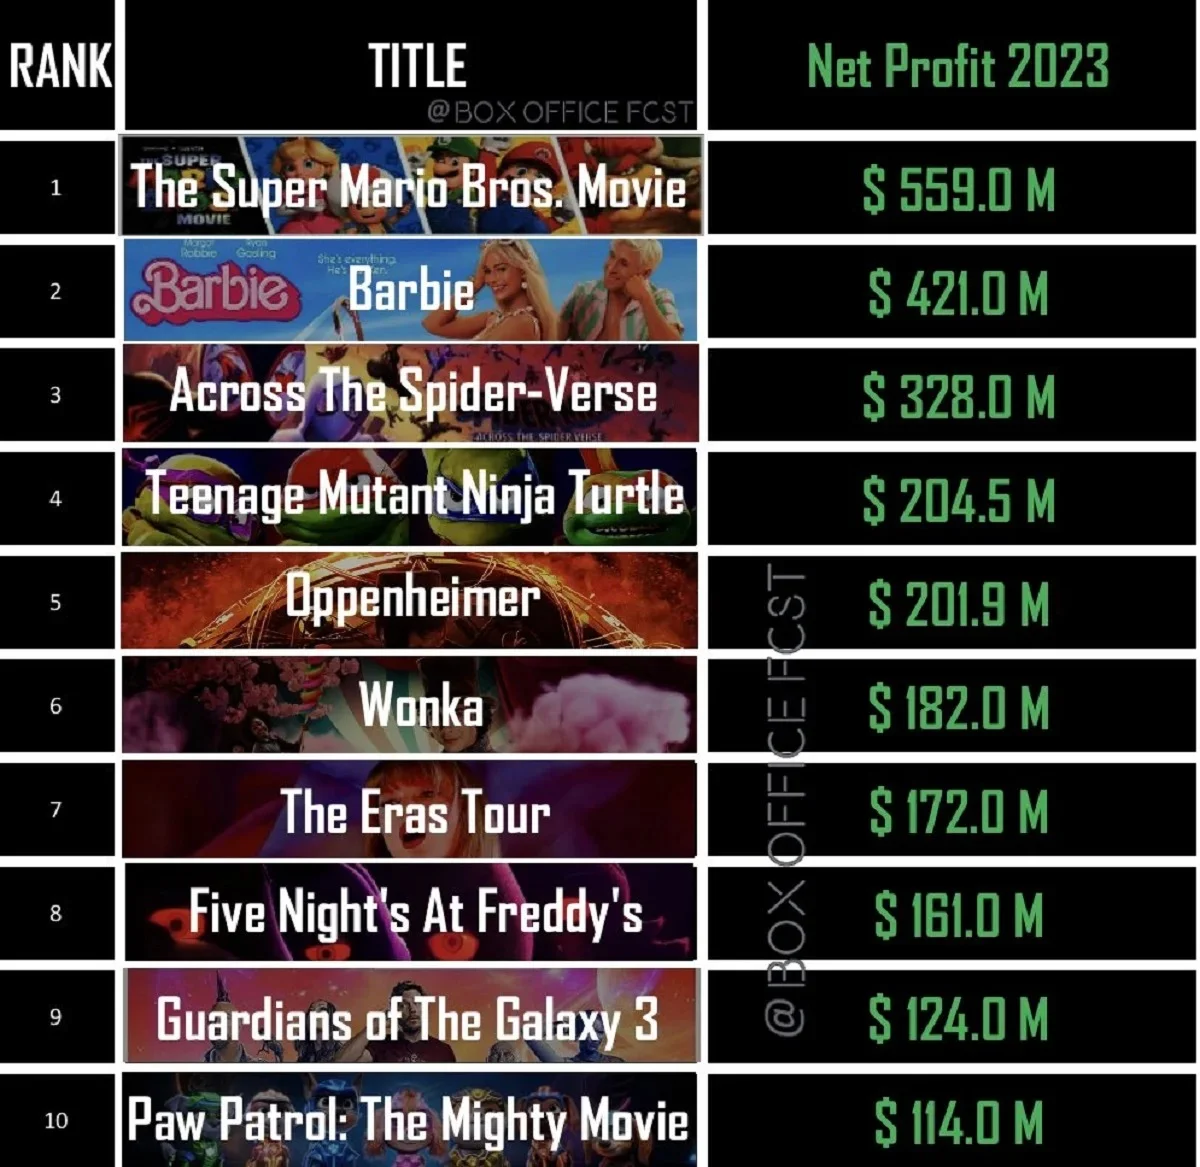 «Братья Супер Марио в кино» стали самой прибыльной лентой в 2023 году - фото 1